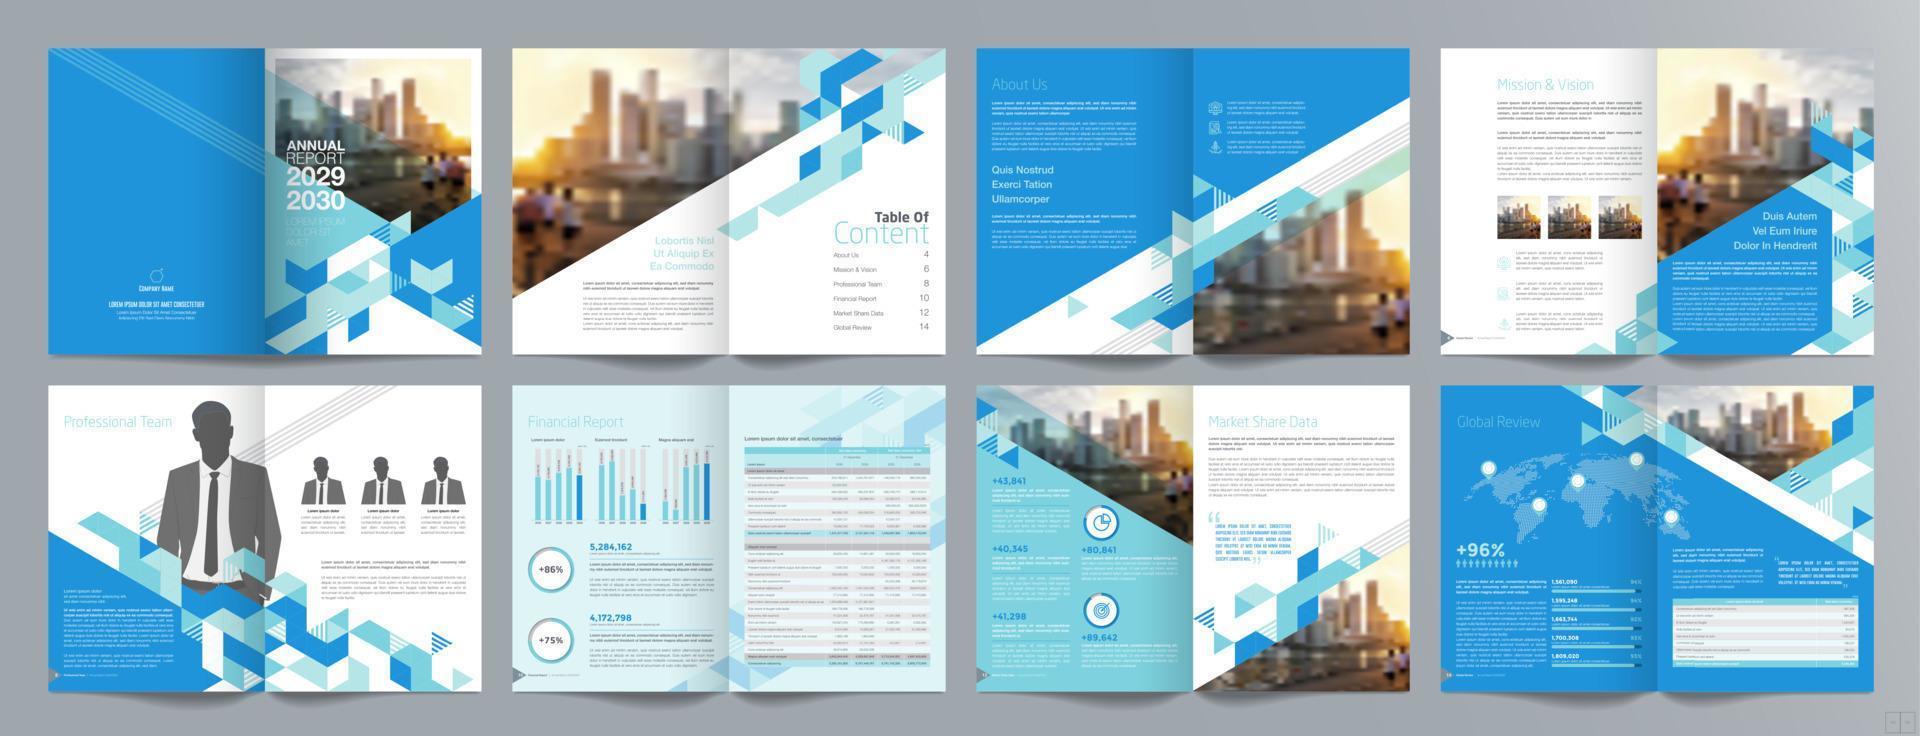 Broschürenvorlage für Unternehmenspräsentationen, Jahresbericht, 16-seitige, minimalistische, flache, geometrische Designvorlage für Geschäftsbroschüren, Größe A4. vektor